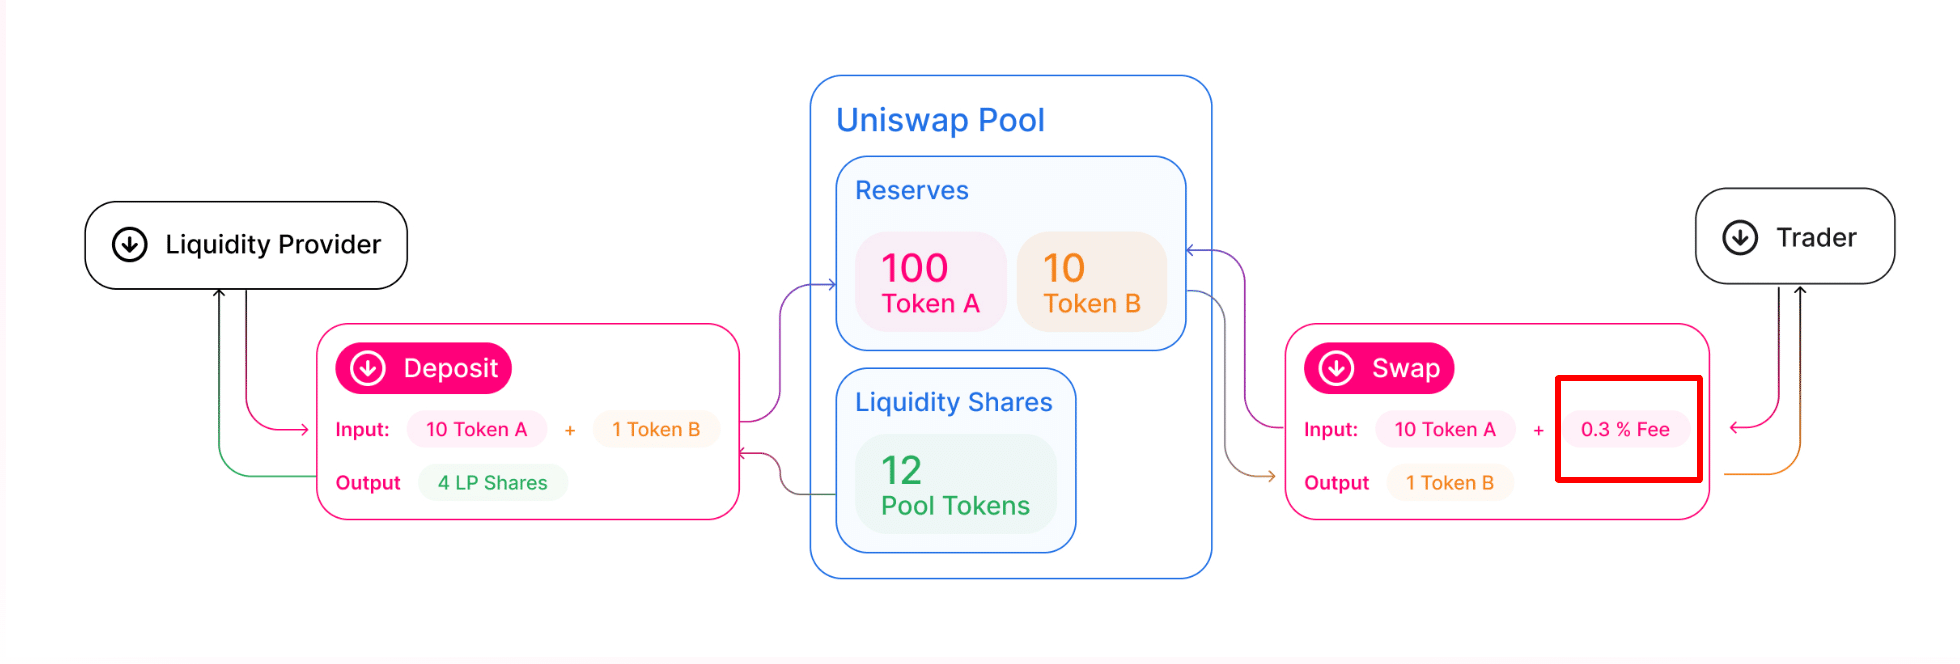 uniswap liquidity pool diagram